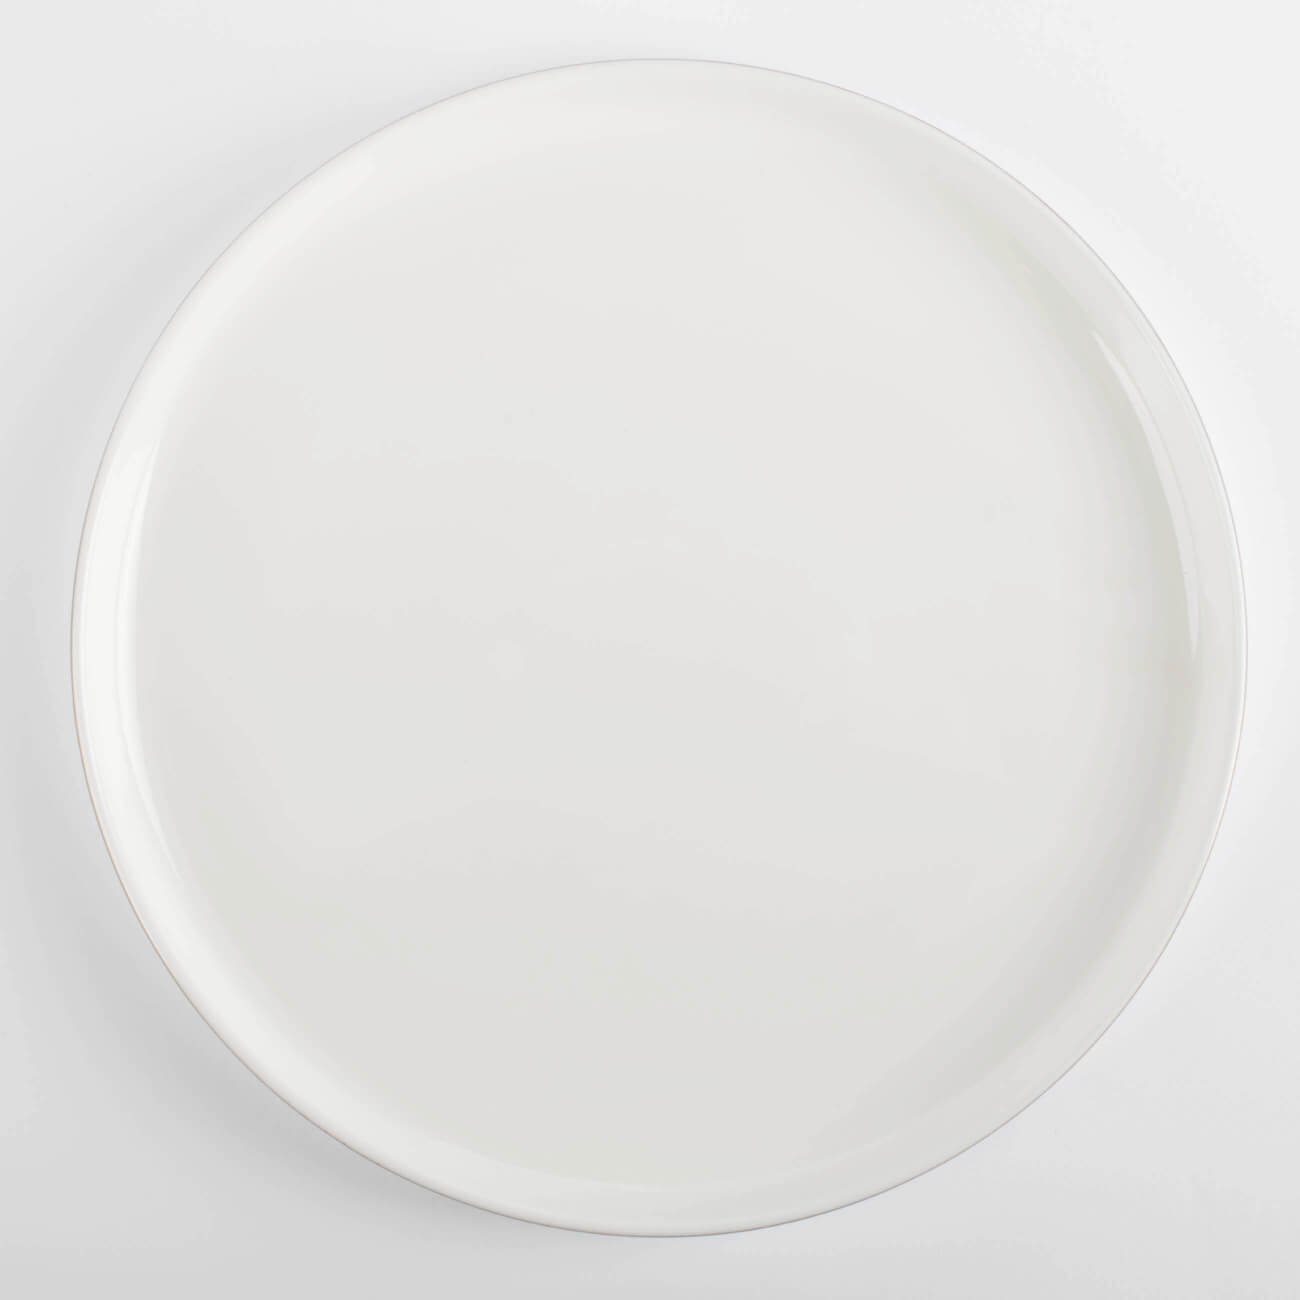 Тарелка обеденная, 26 см, фарфор F, белая, Ideal gold изображение № 1